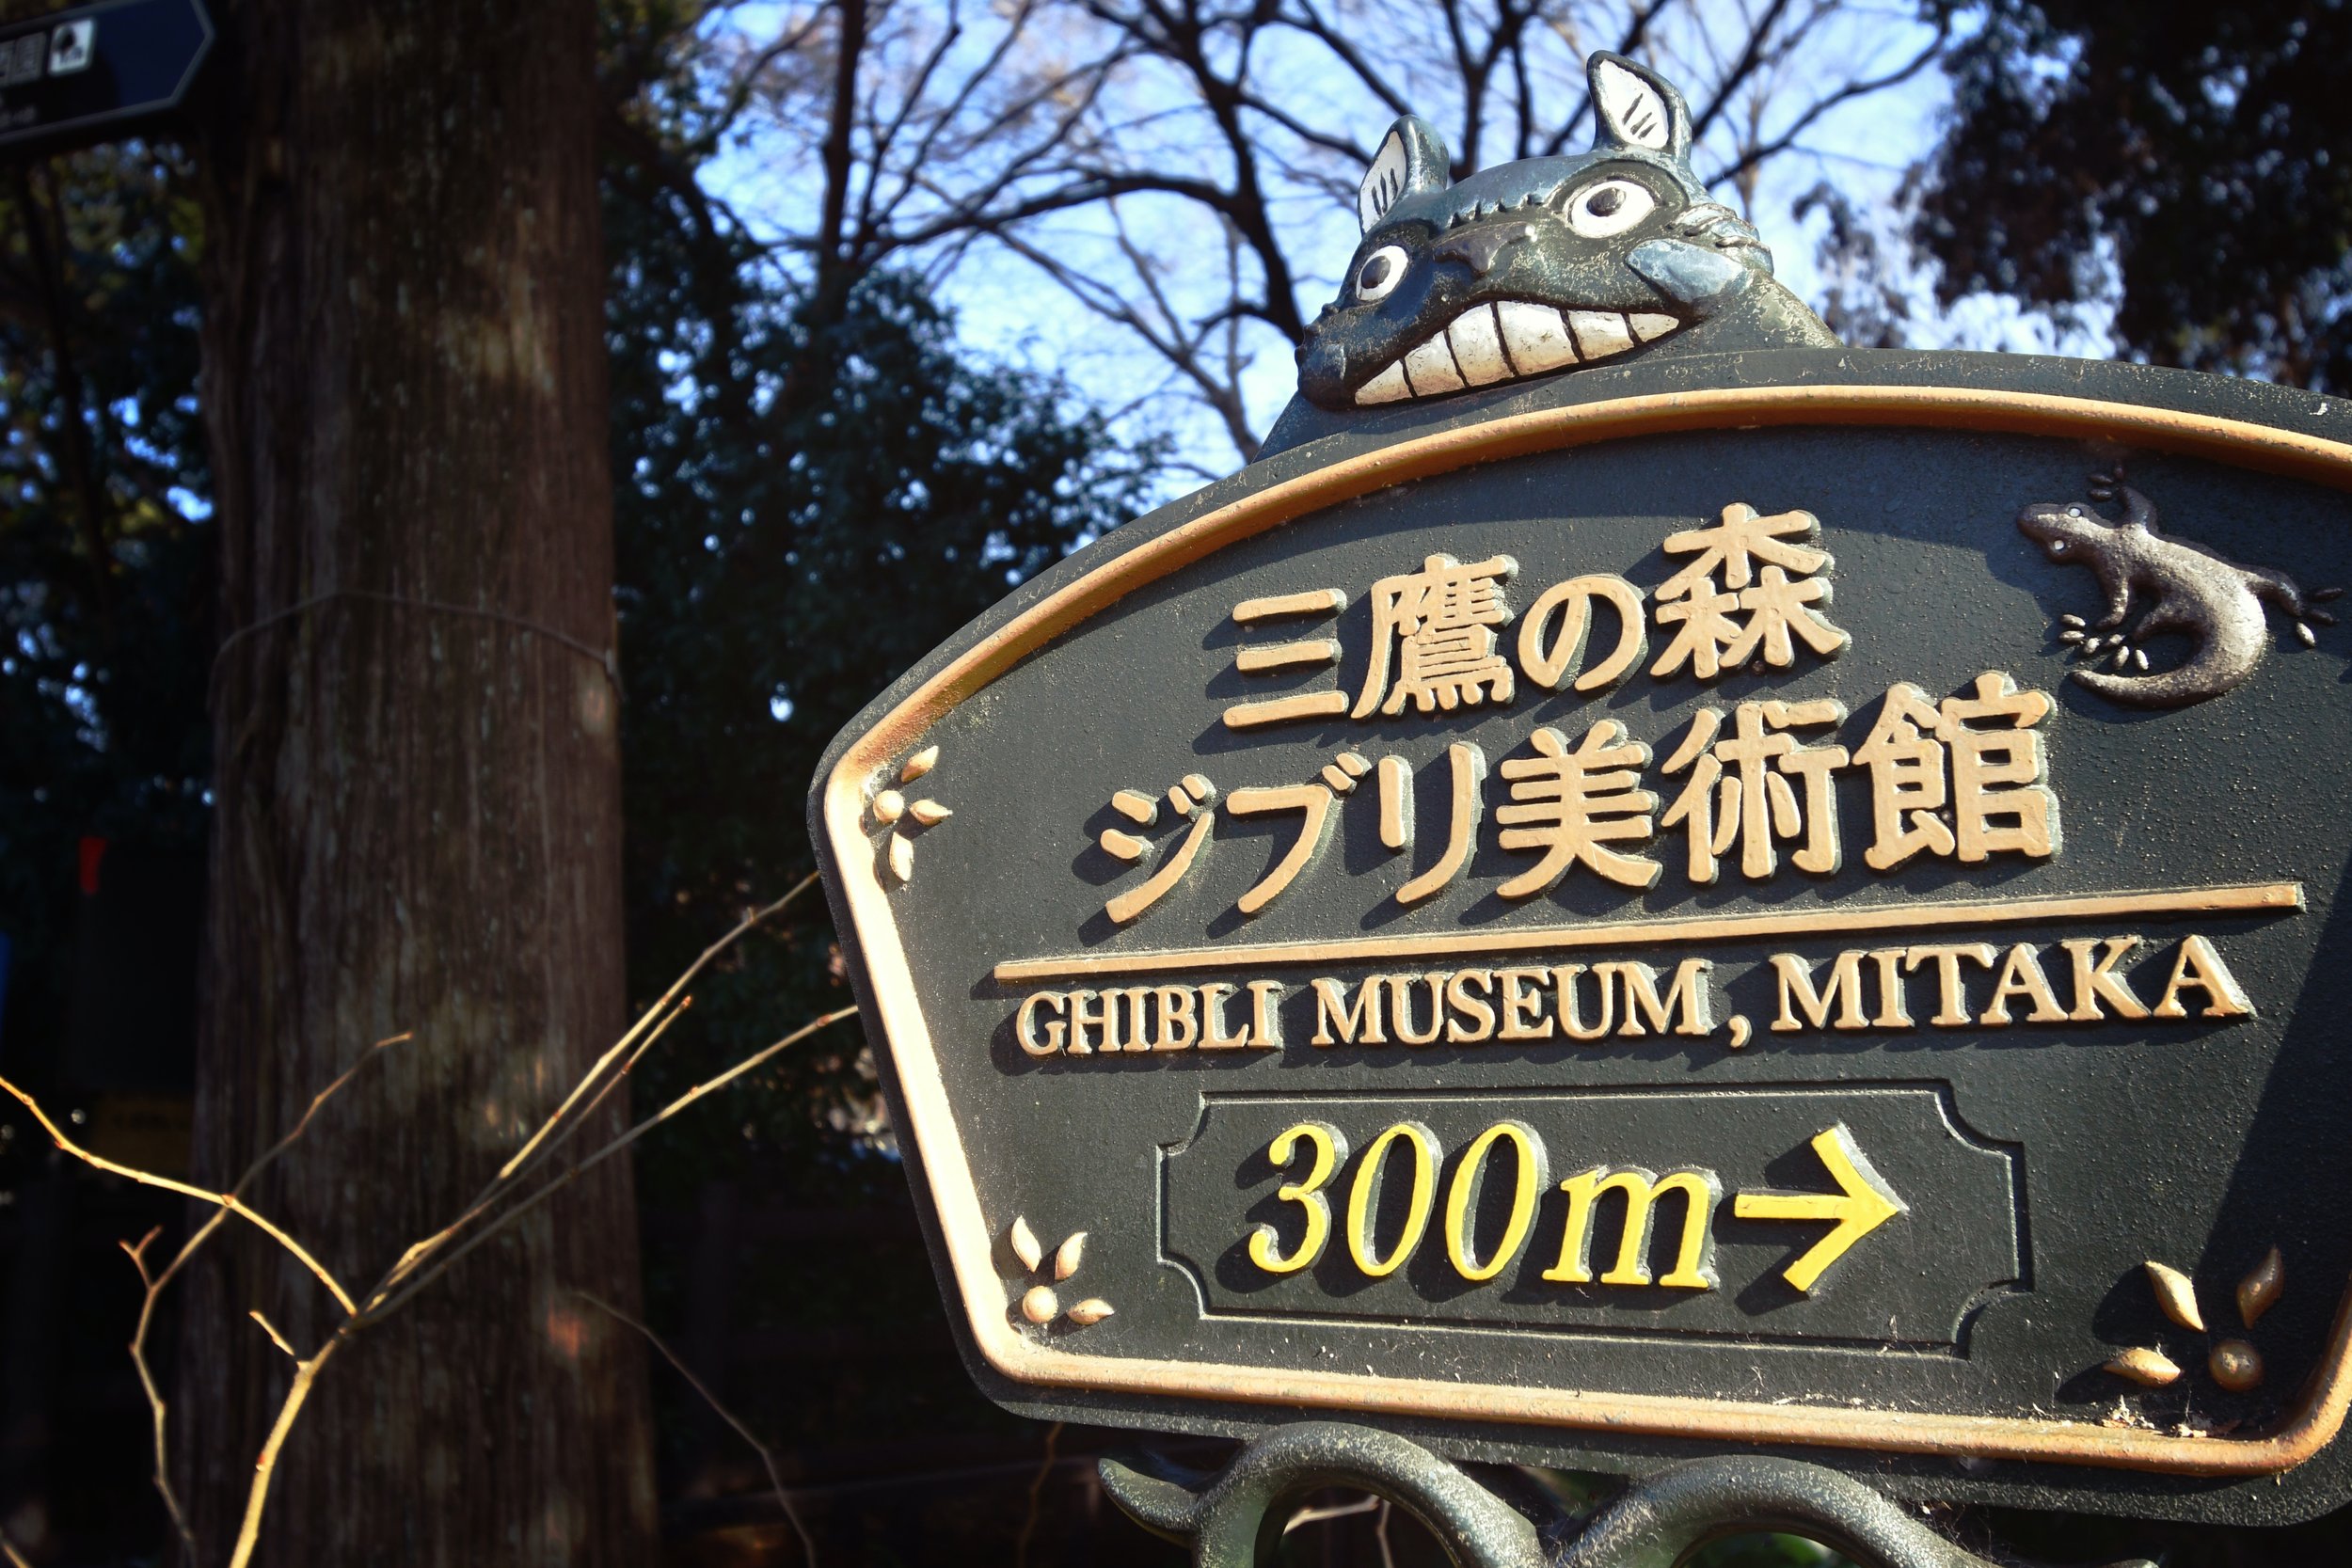 Dersom man får tak i billetter er Ghibli-museet et must for fans av filmstudioet!